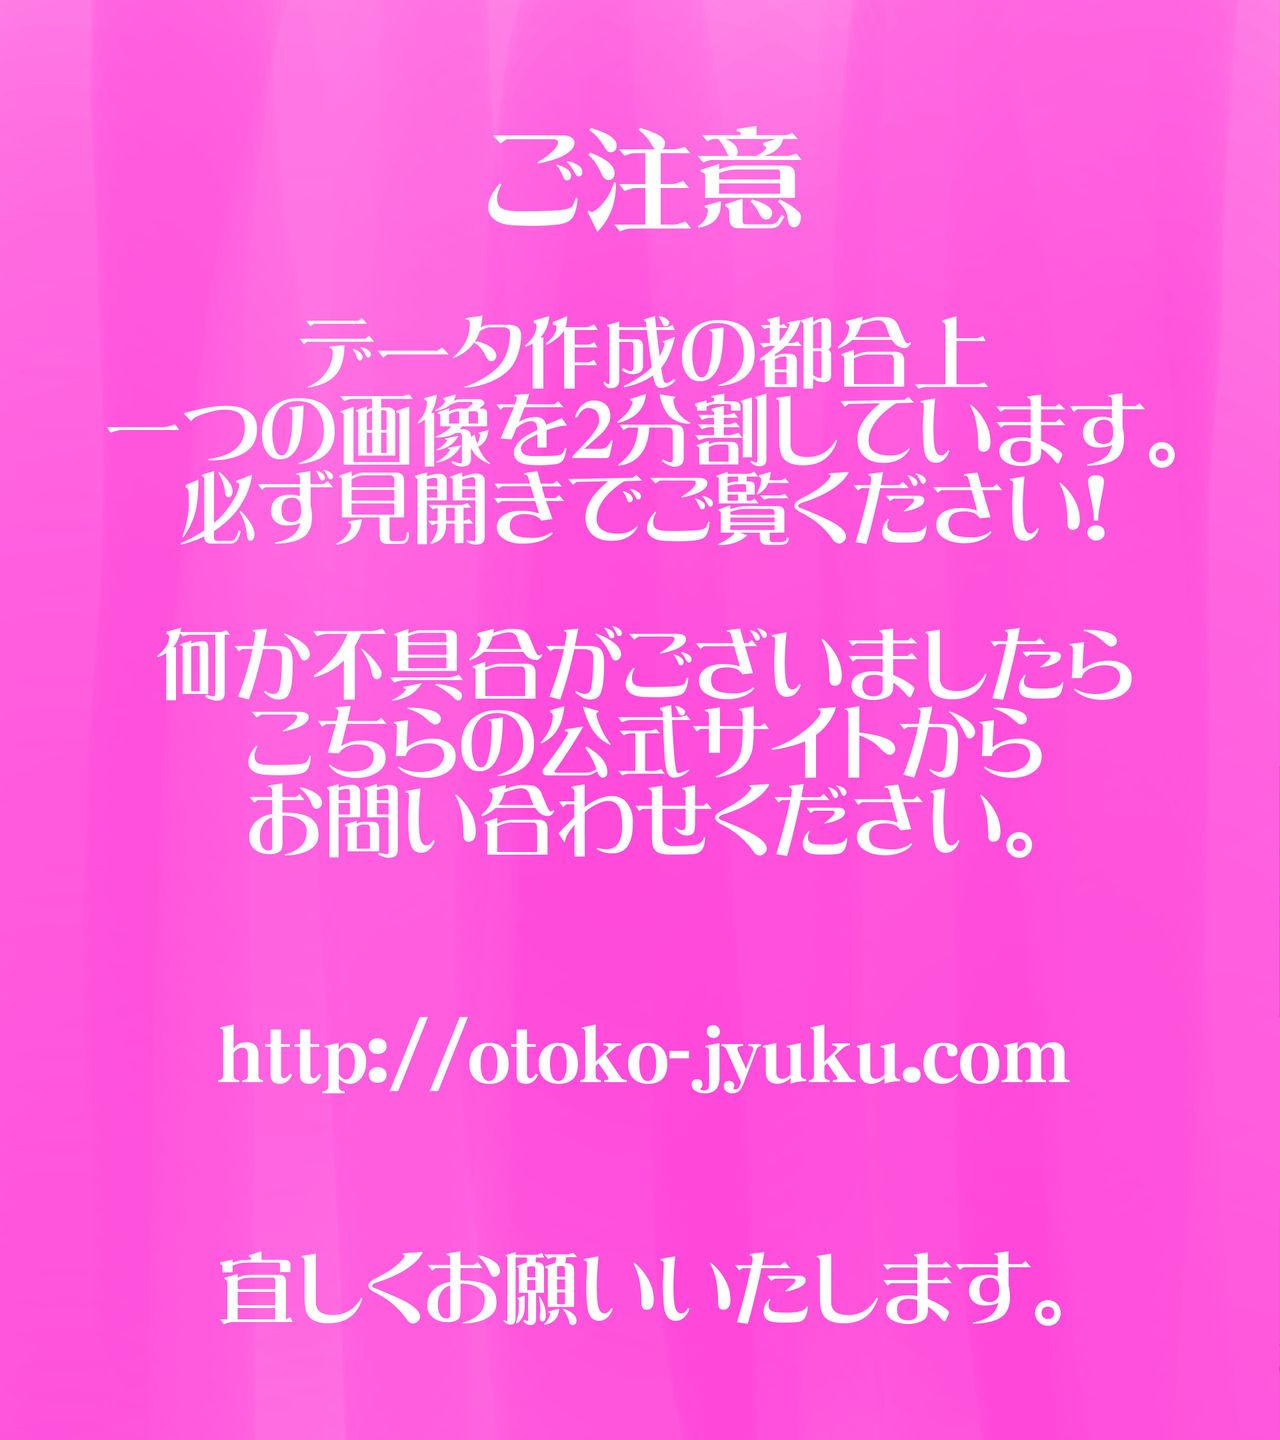 Moto AV Danyuu Kyoushi no Kimoyama Sensei "NO CUT-VERSION" 1